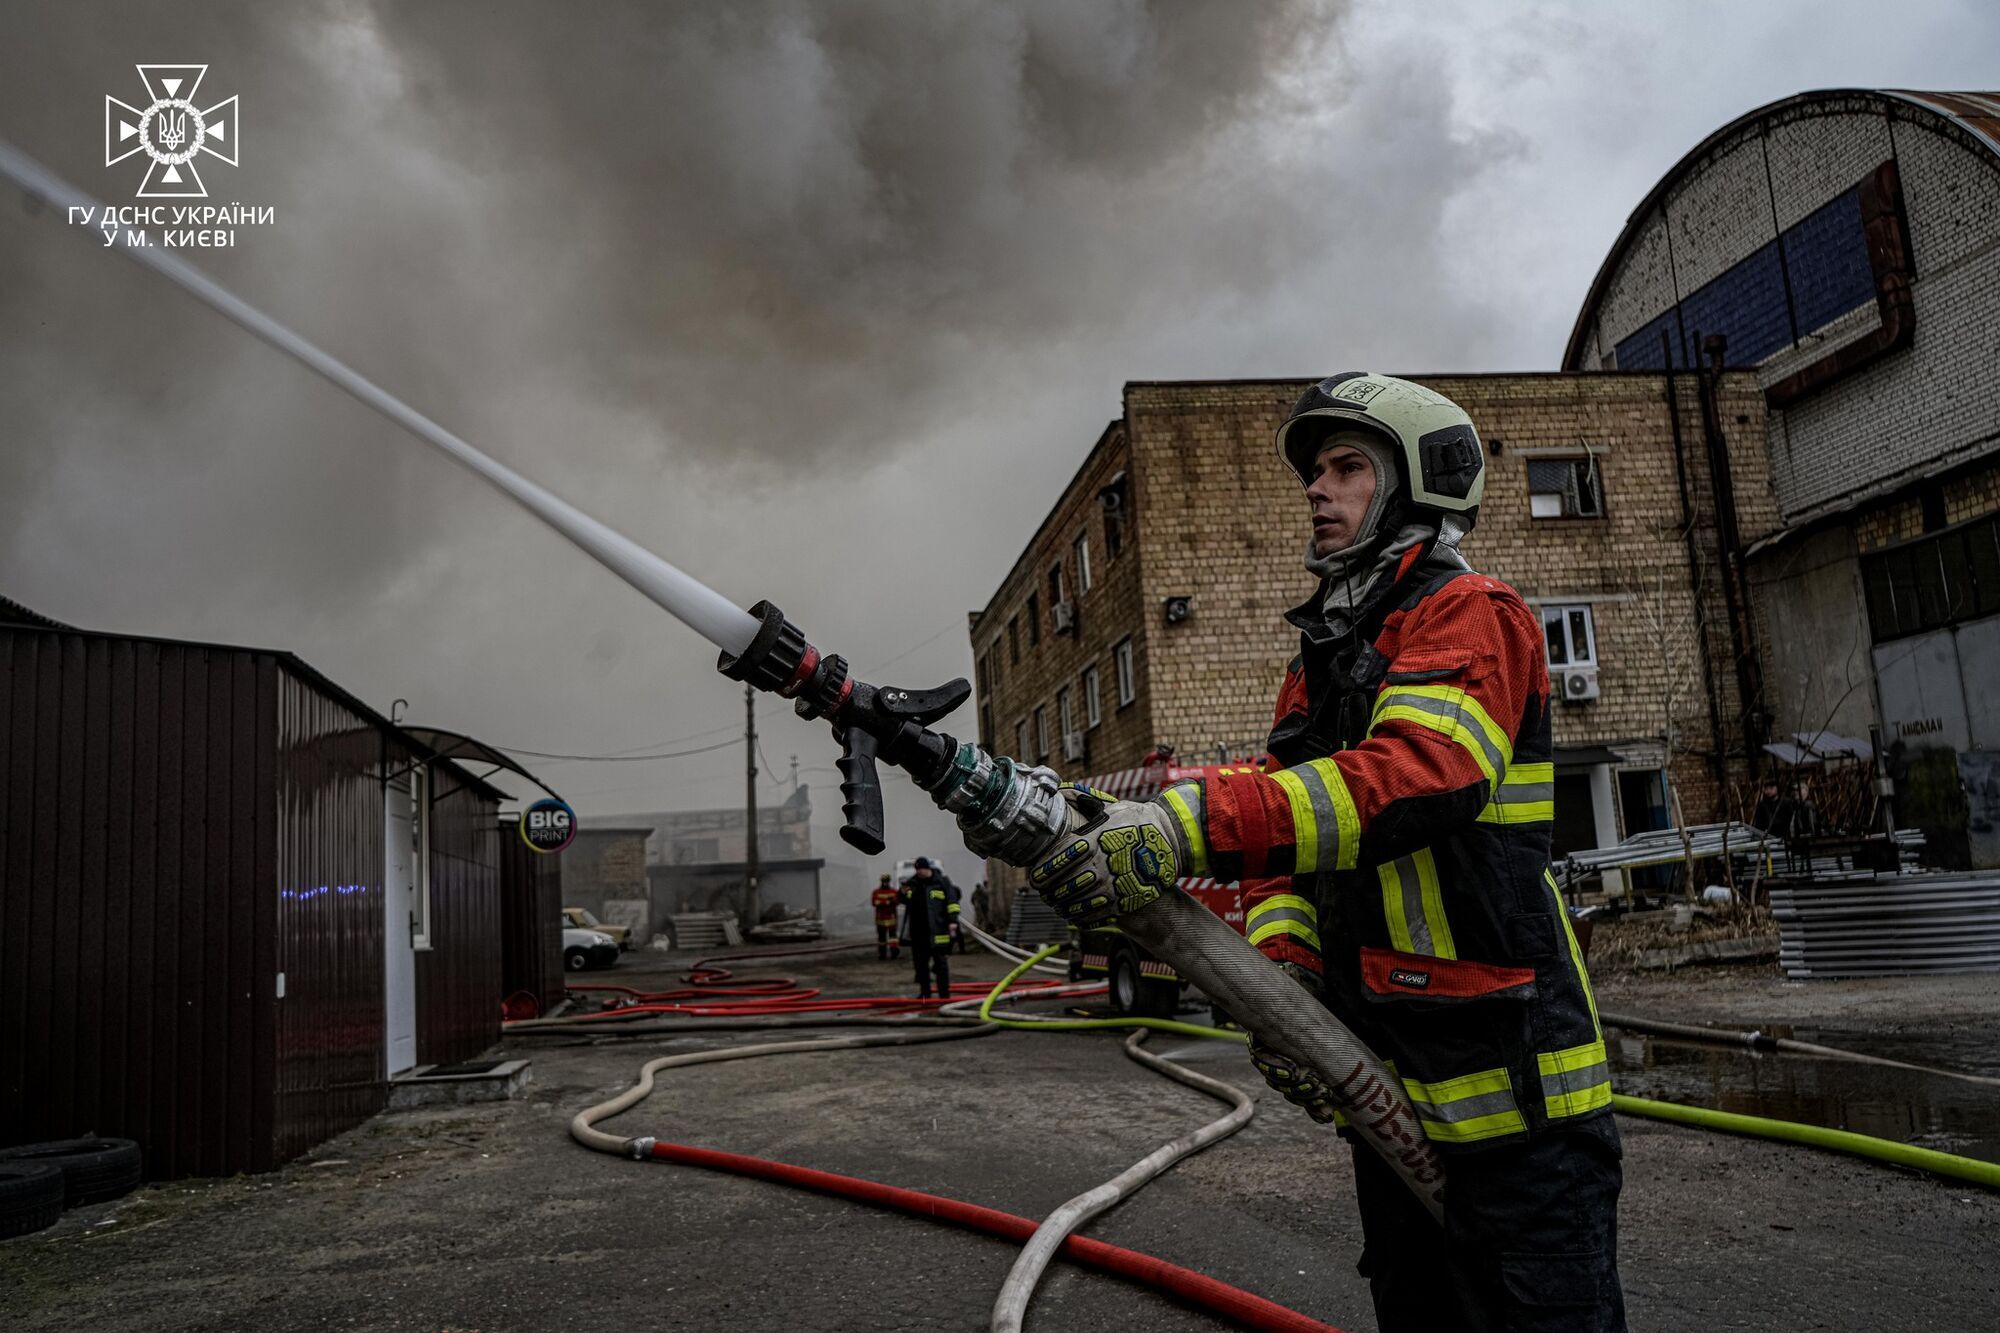 В Киеве произошел масштабный пожар в складских помещениях: возможно ухудшение качества воздуха. Фото и видео